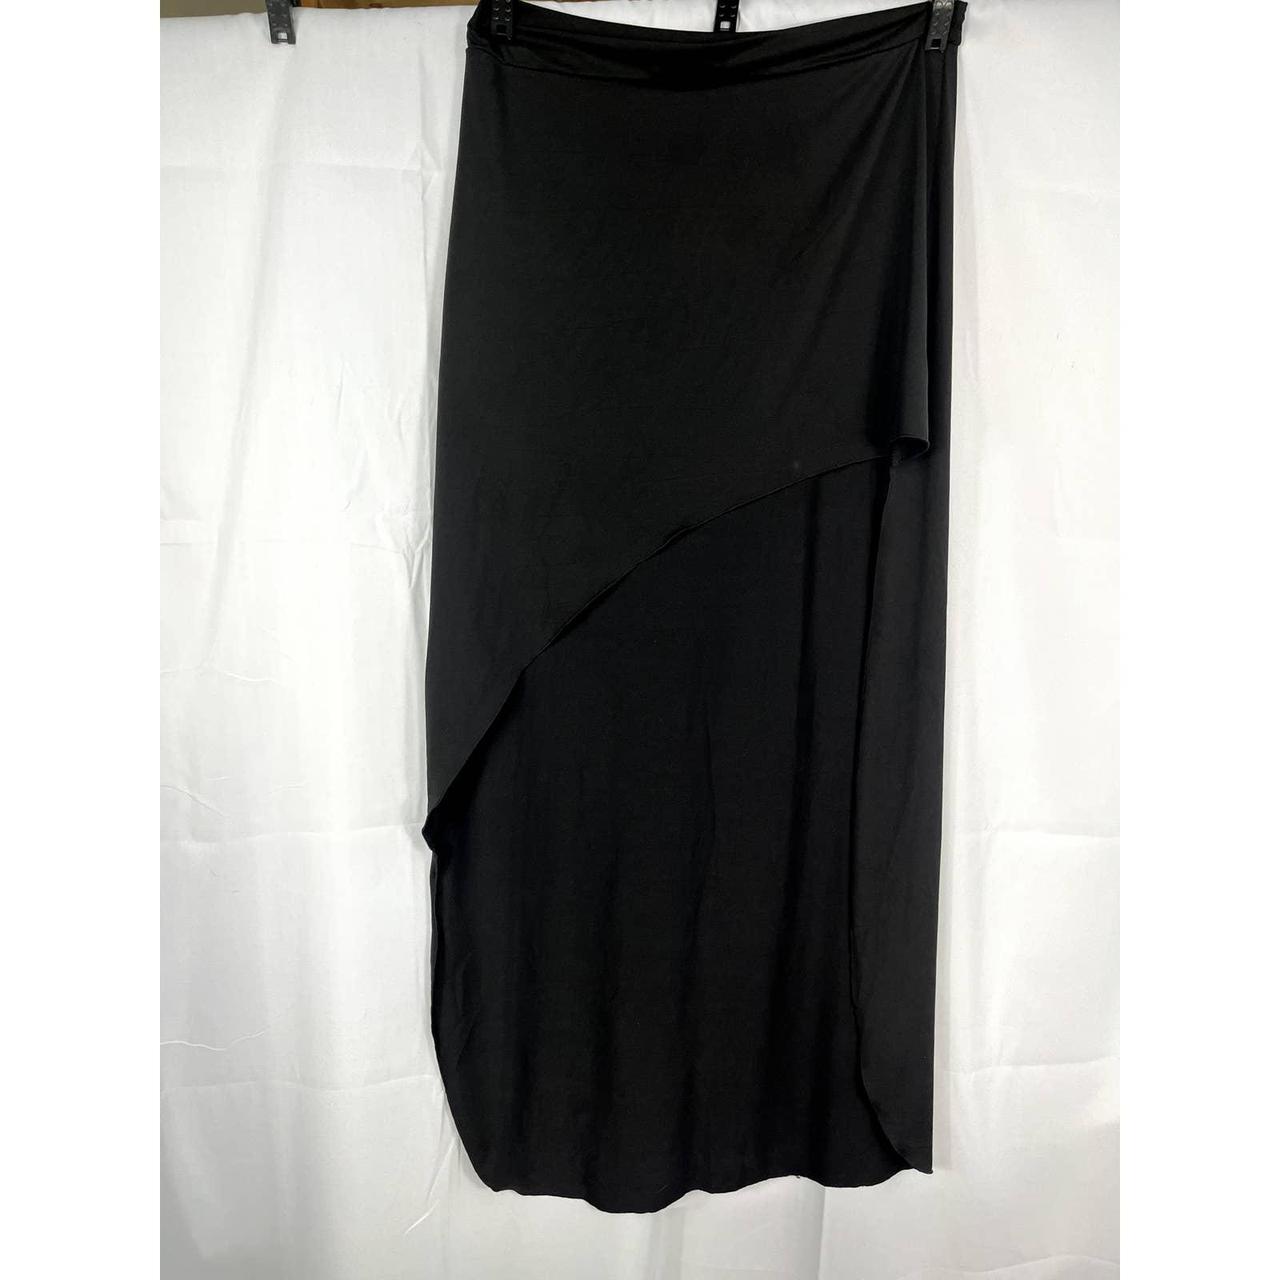 Finejo Woman's Black A-line Skirt High open Front... - Depop